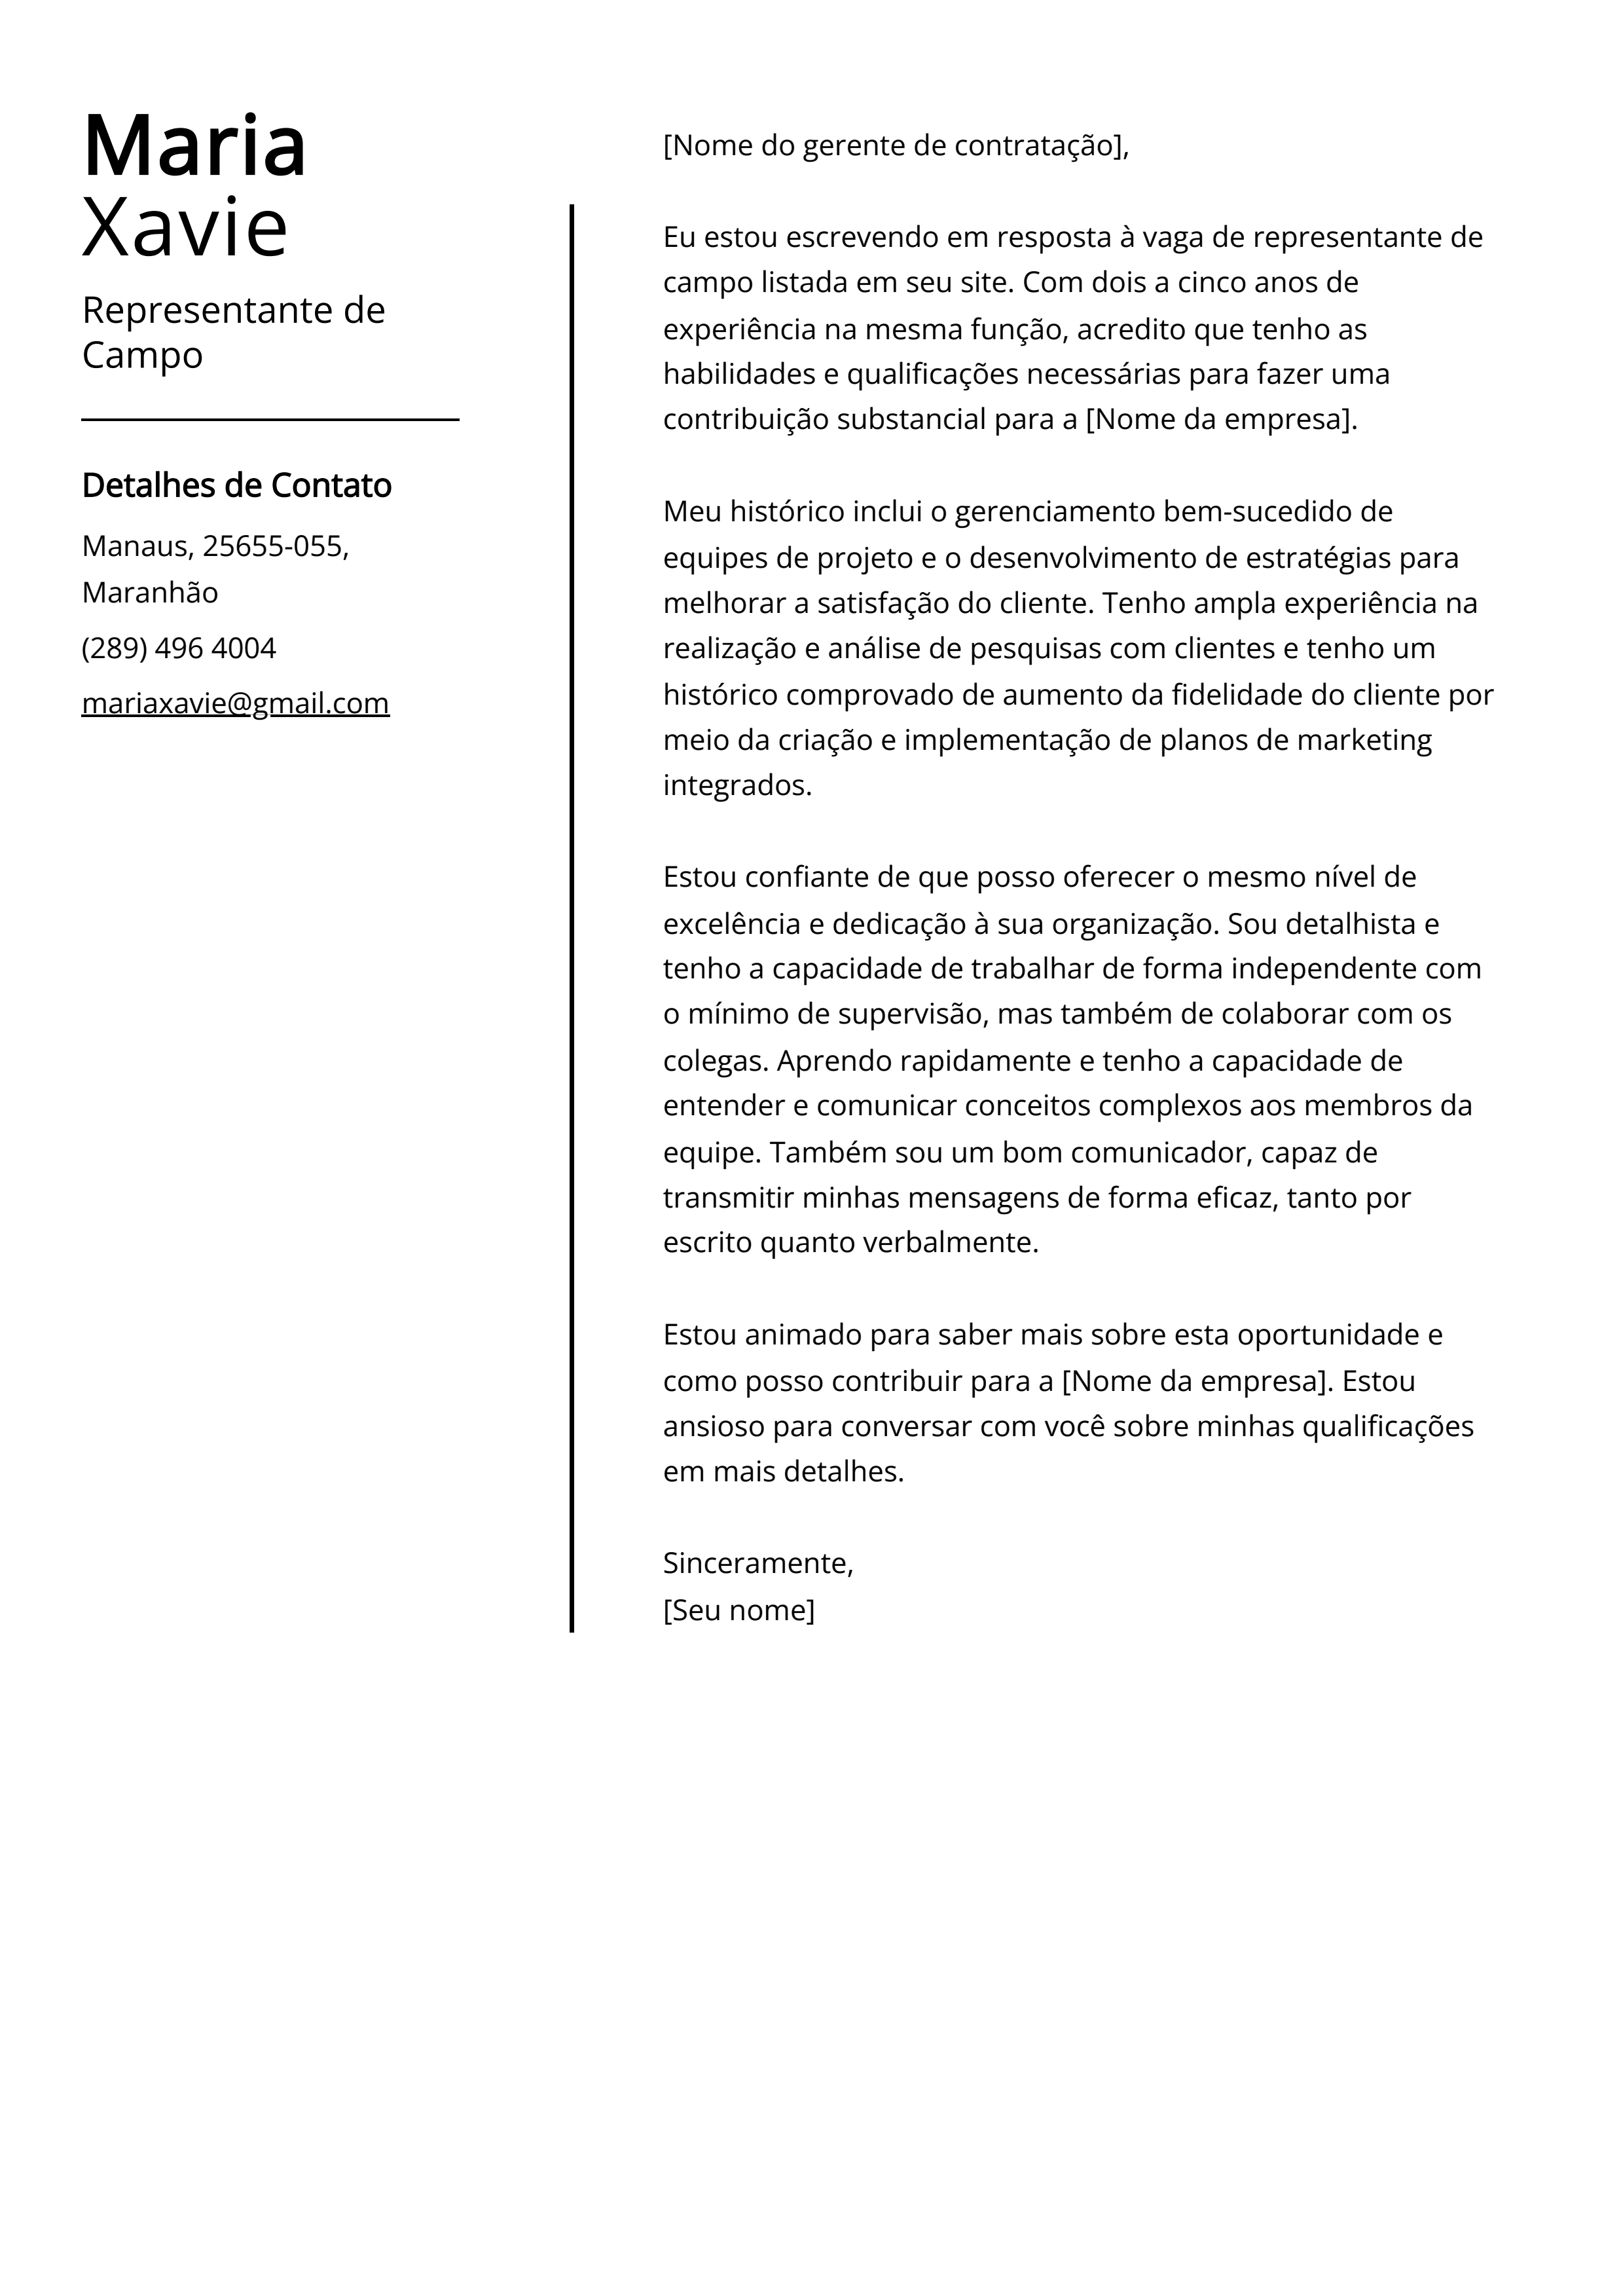 Exemplo de Carta de Apresentação de Representante de Campo